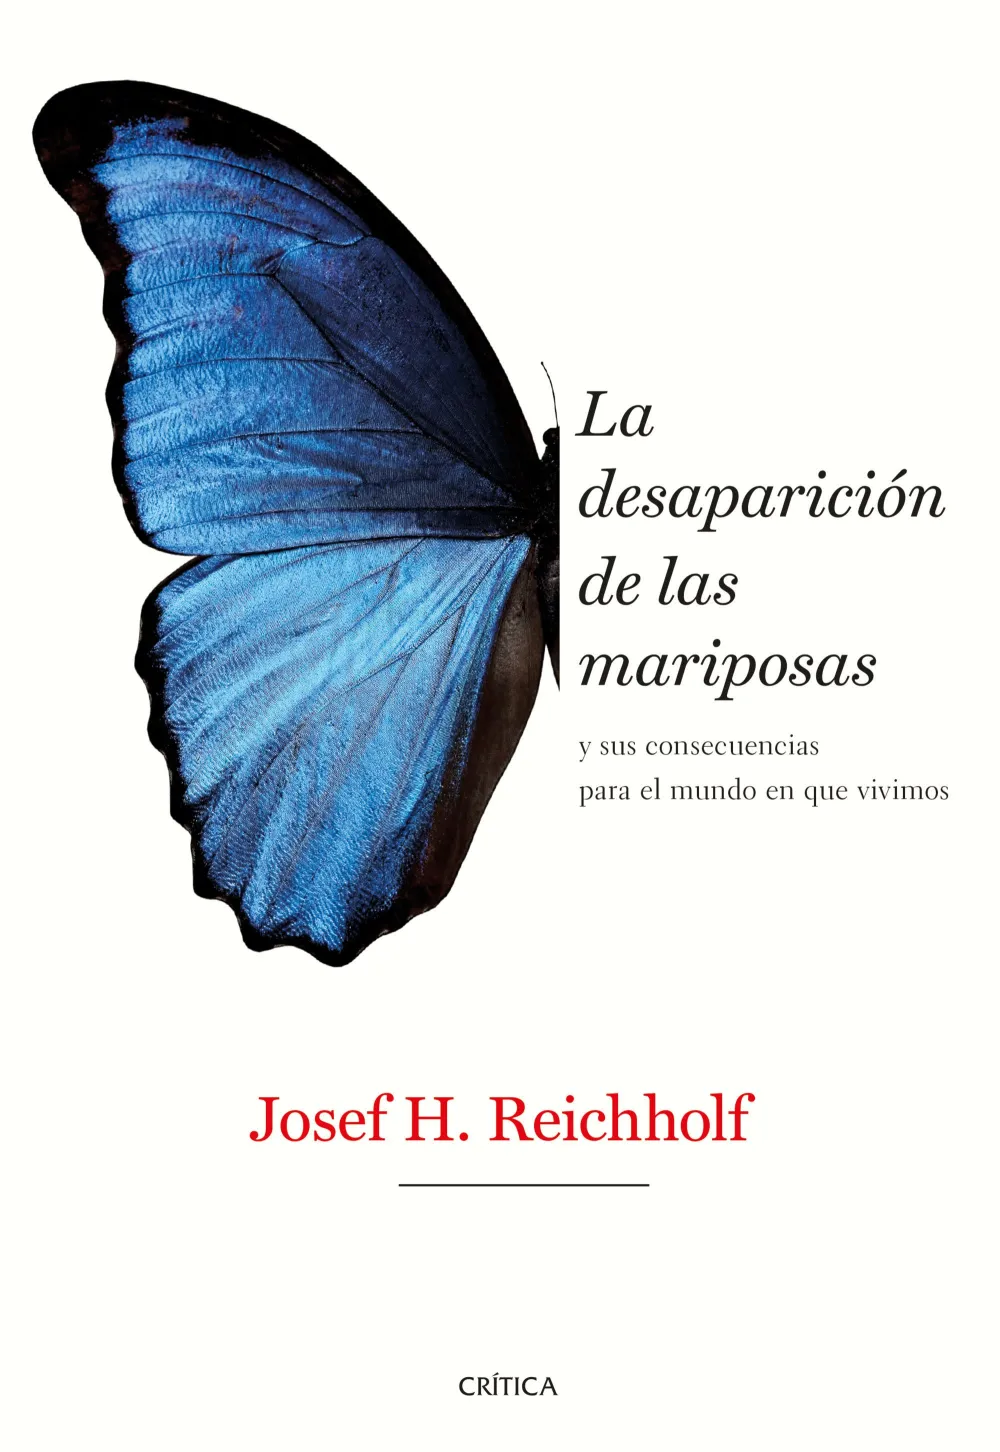 La desaparición de las mariposas y sus consecuencias para el mundo en que vivimos. Josef H. Reichholf.